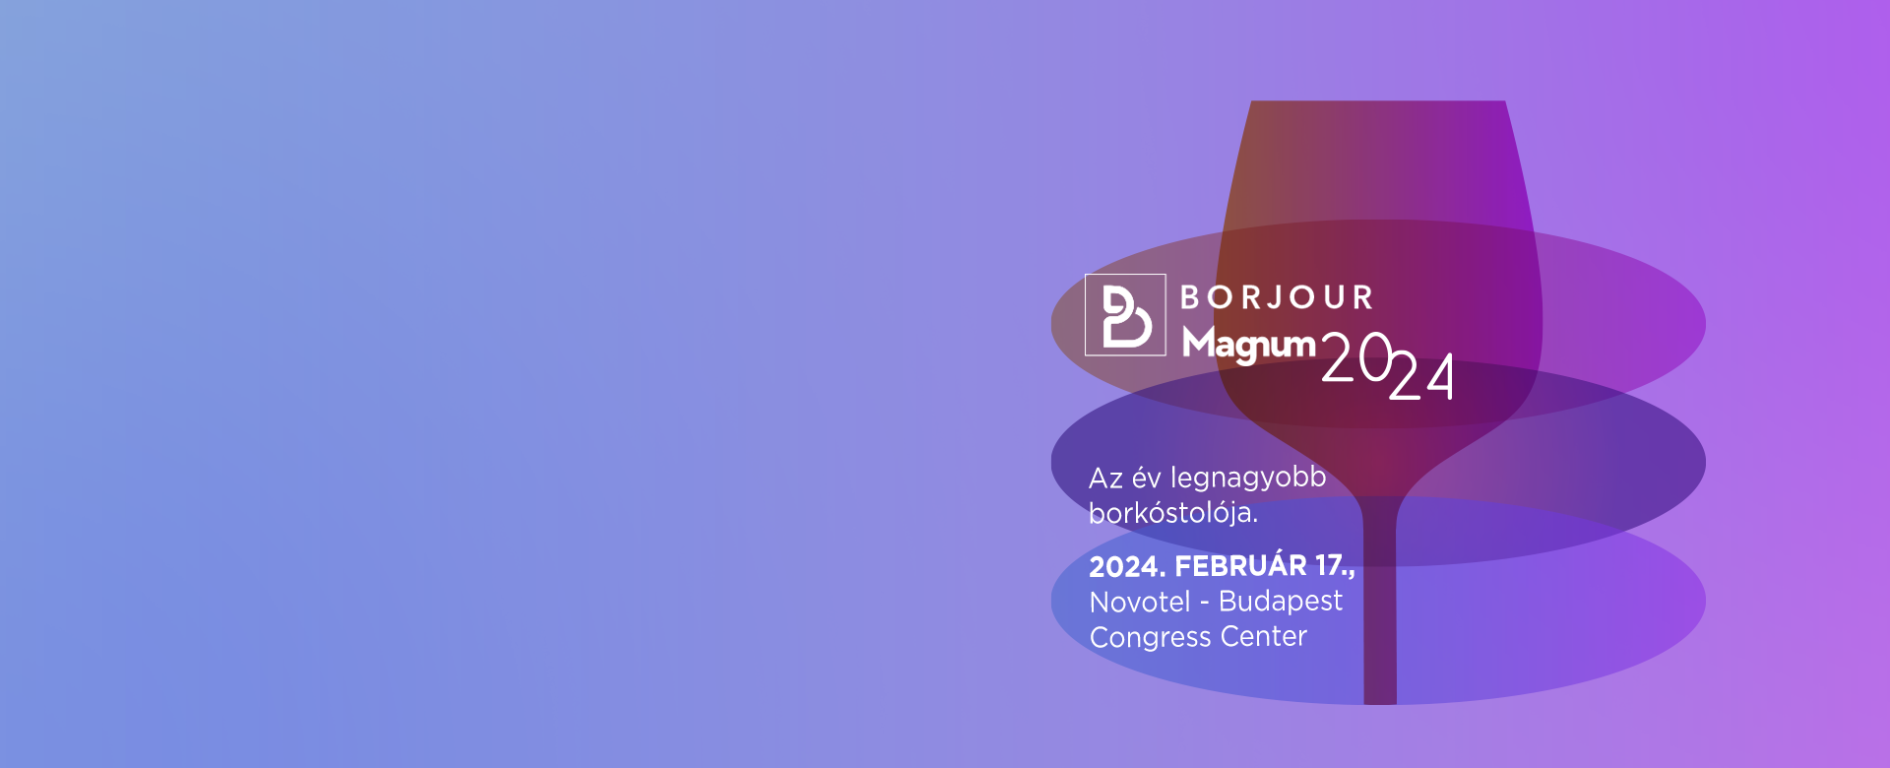 Borjour Magnum 2024